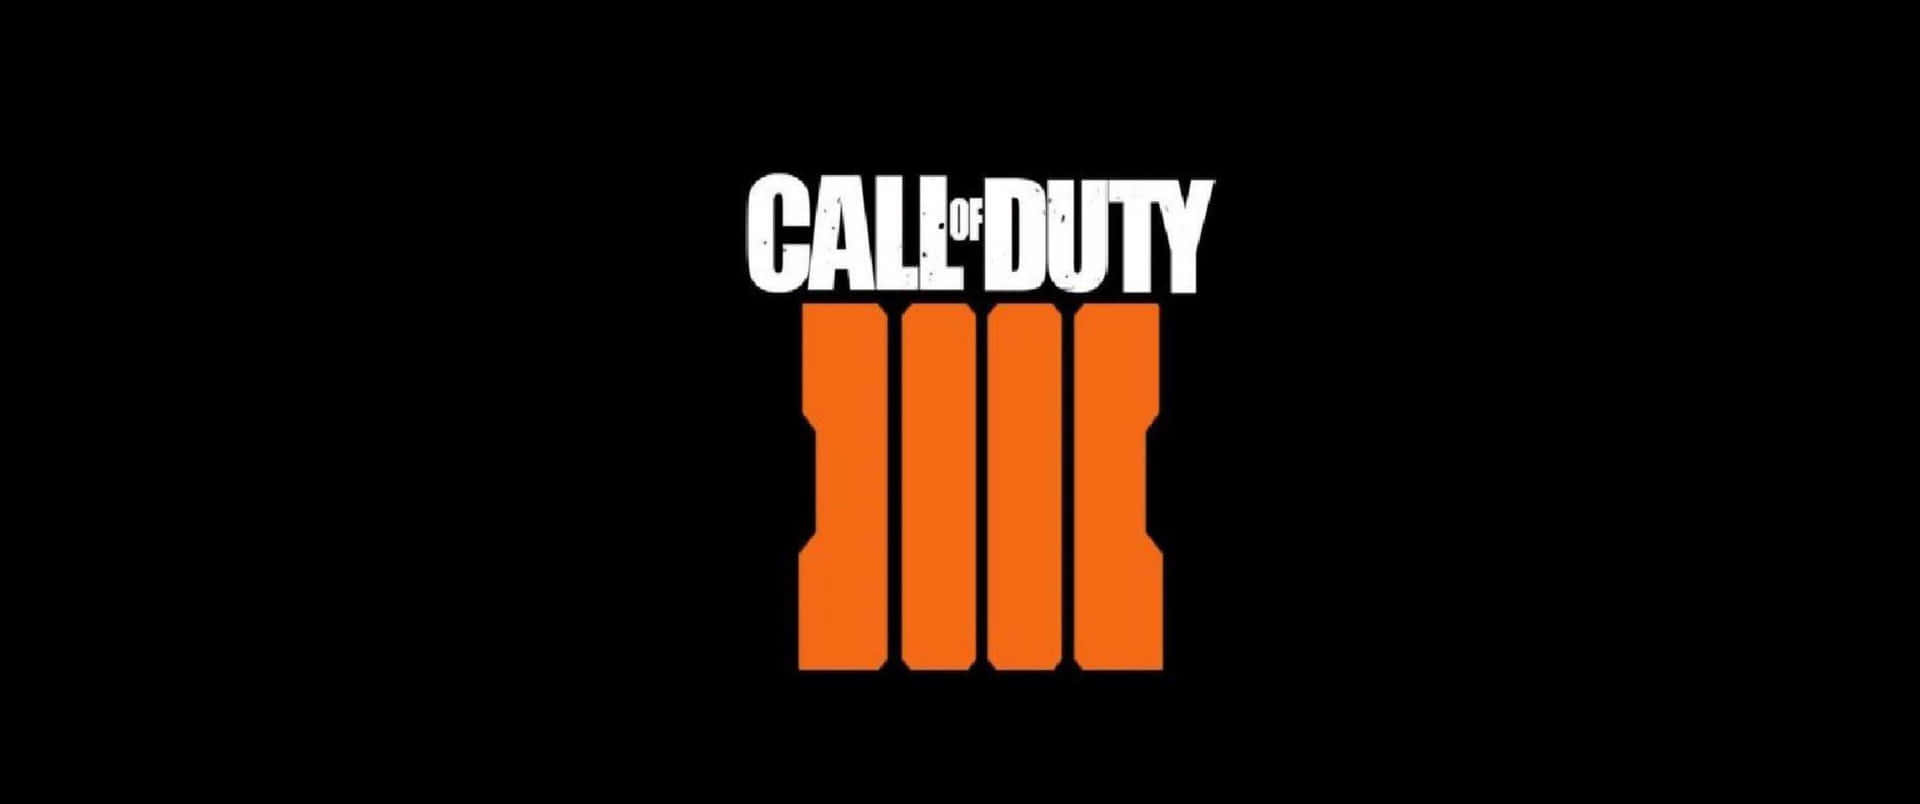 Callof Duty Iii-logotyp På En Svart Bakgrund.